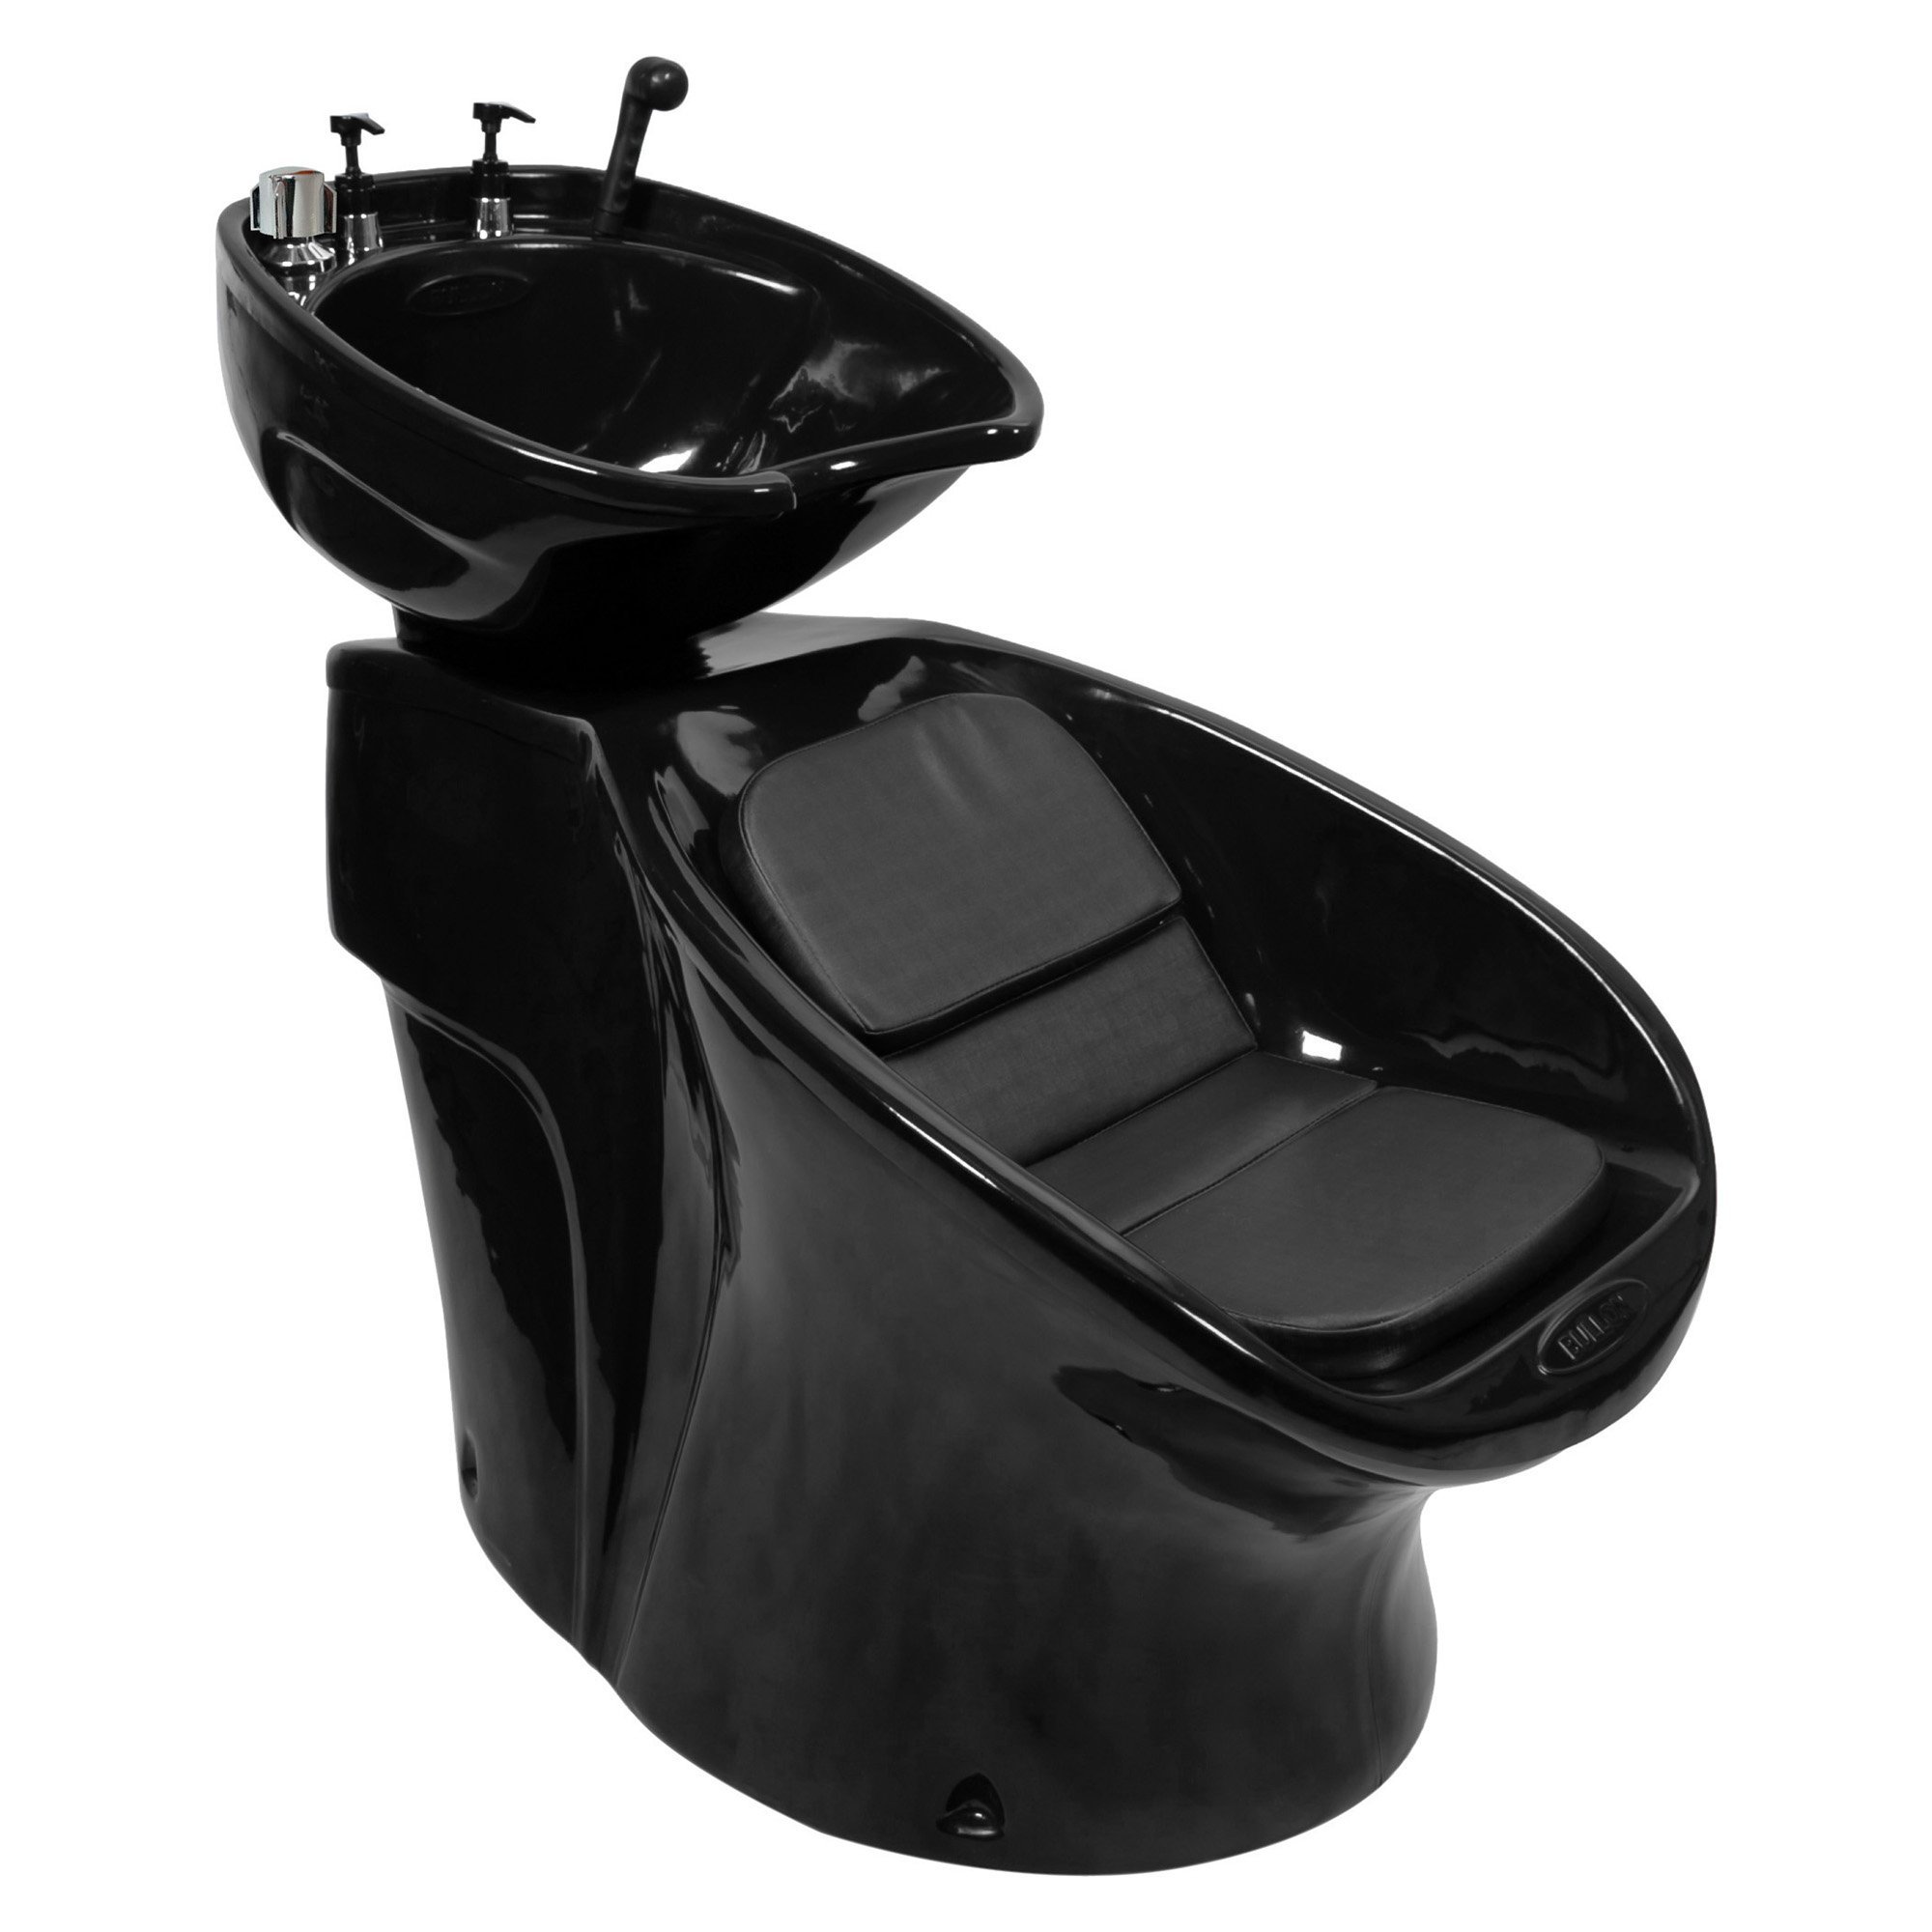 Lavatório Neon Shampoo + Cadeira Talita Reclinável + Carrinho Auxiliar - Preto - 220 - 3